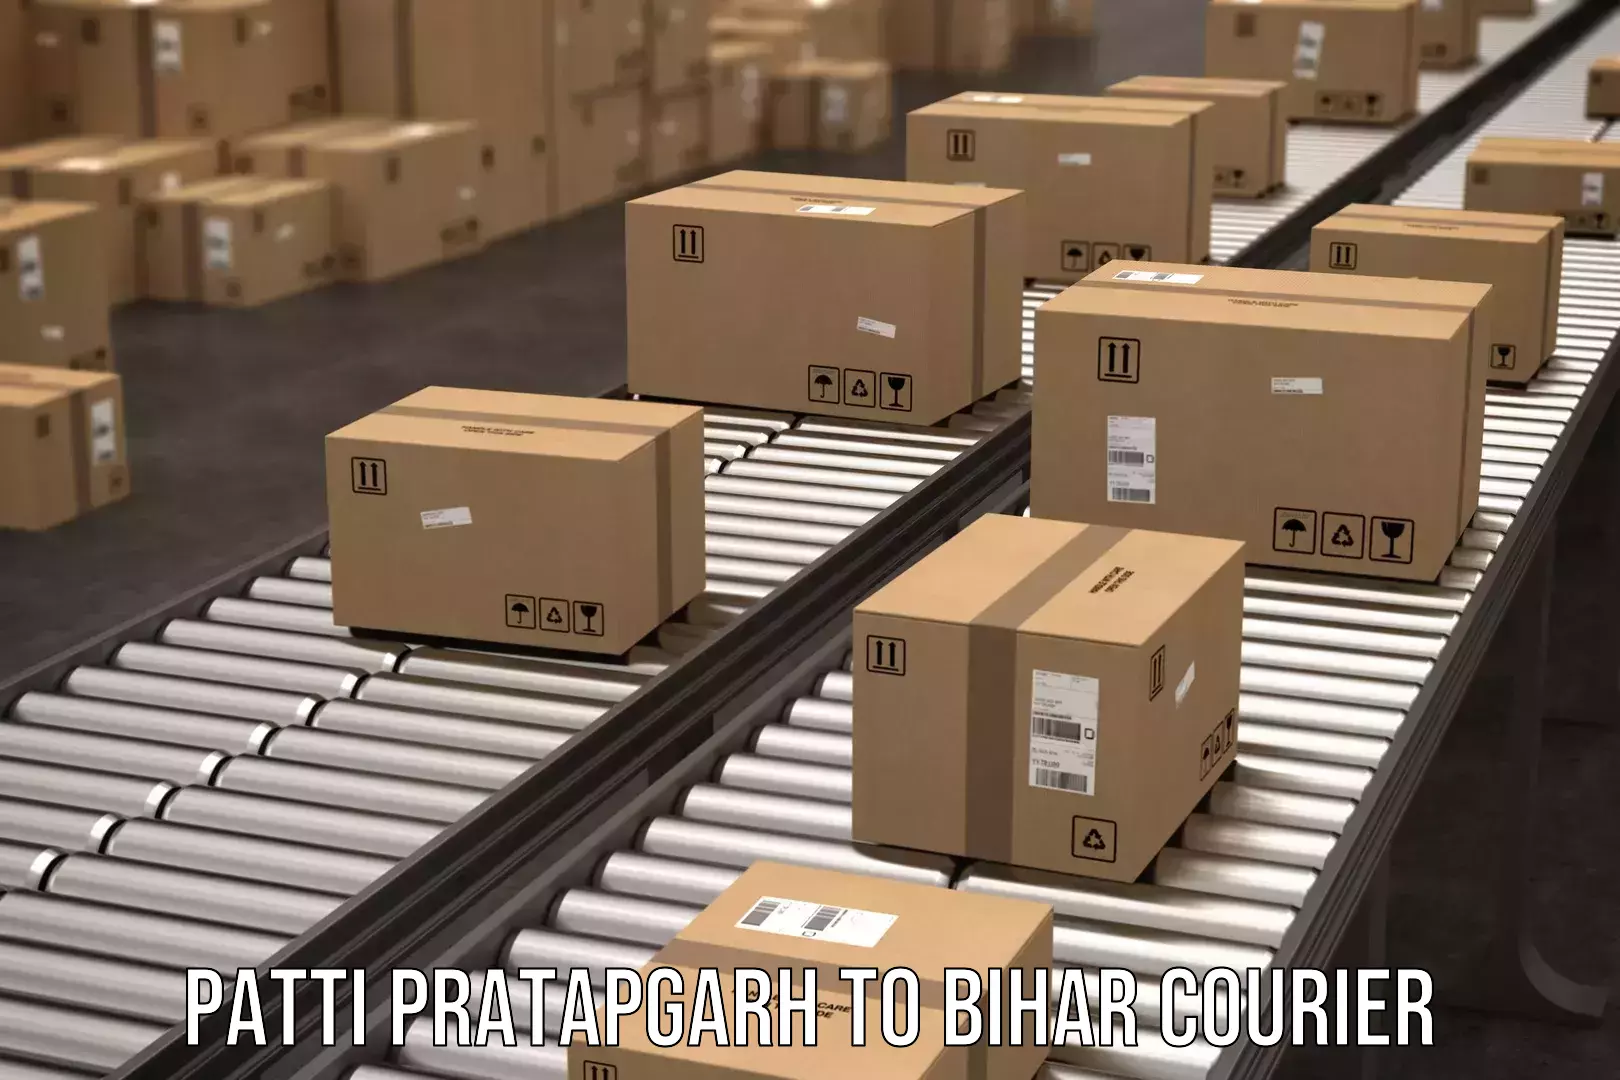 Discounted shipping Patti Pratapgarh to Motipur